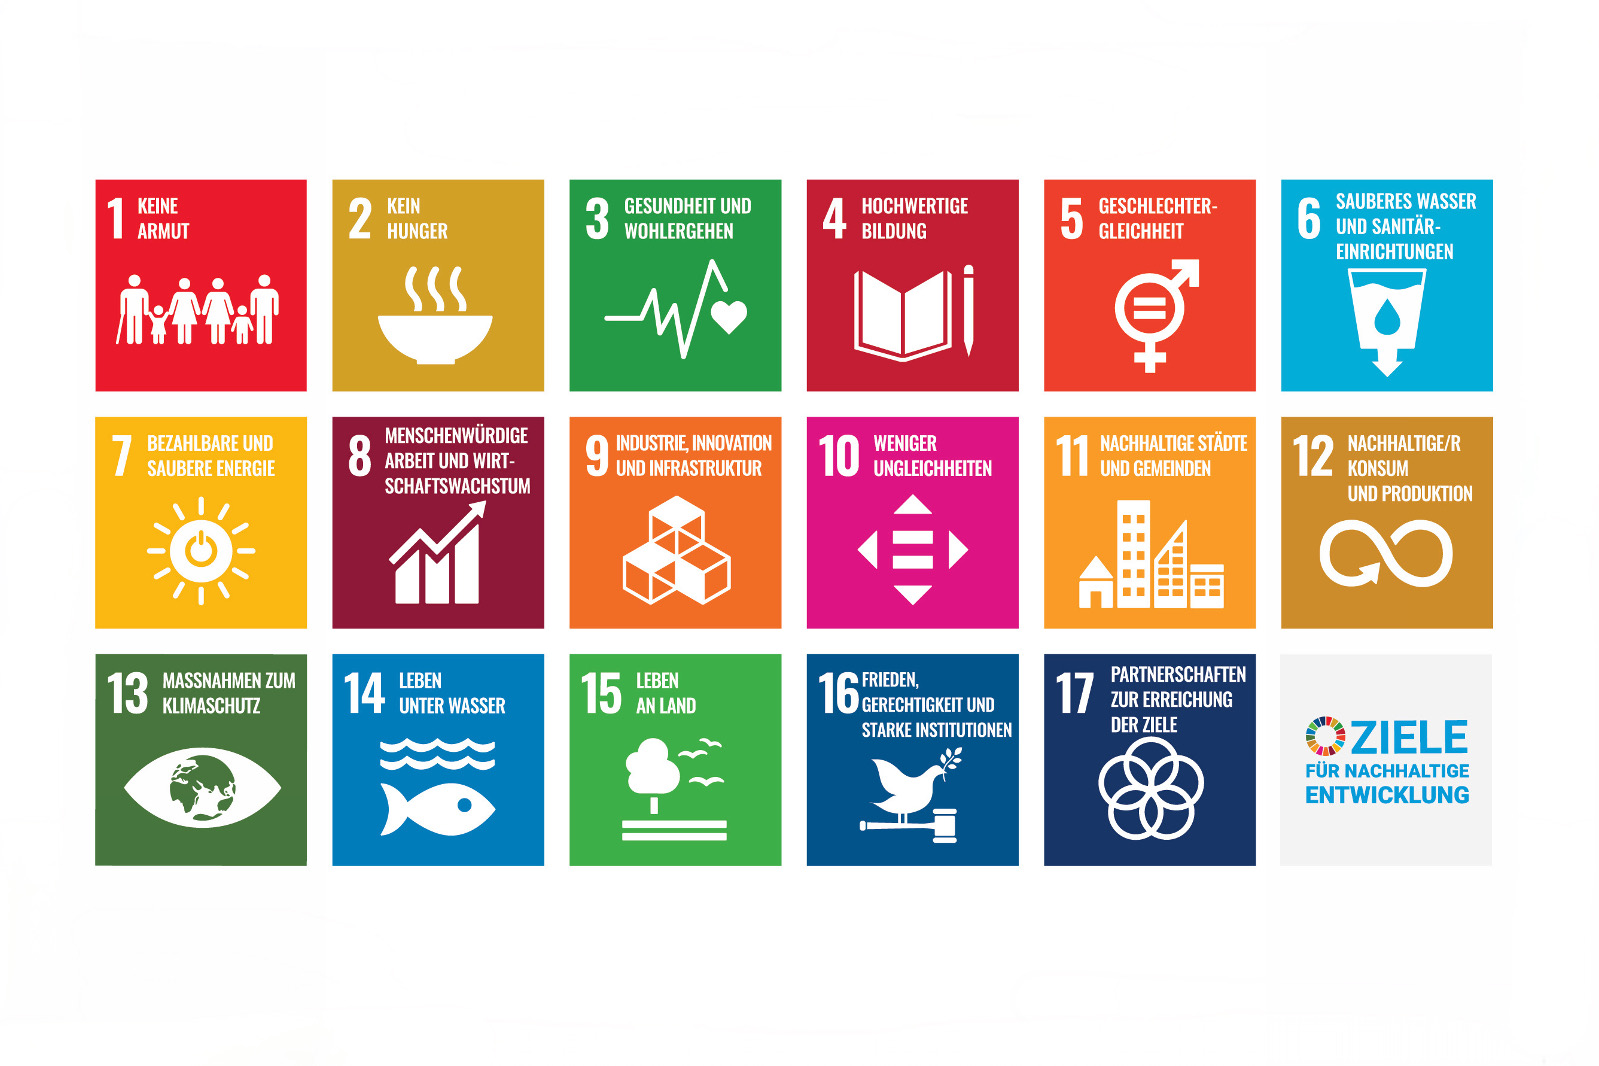 Die 17 Ziele der Vereinten Nationen für eine nachhaltige Entwicklung